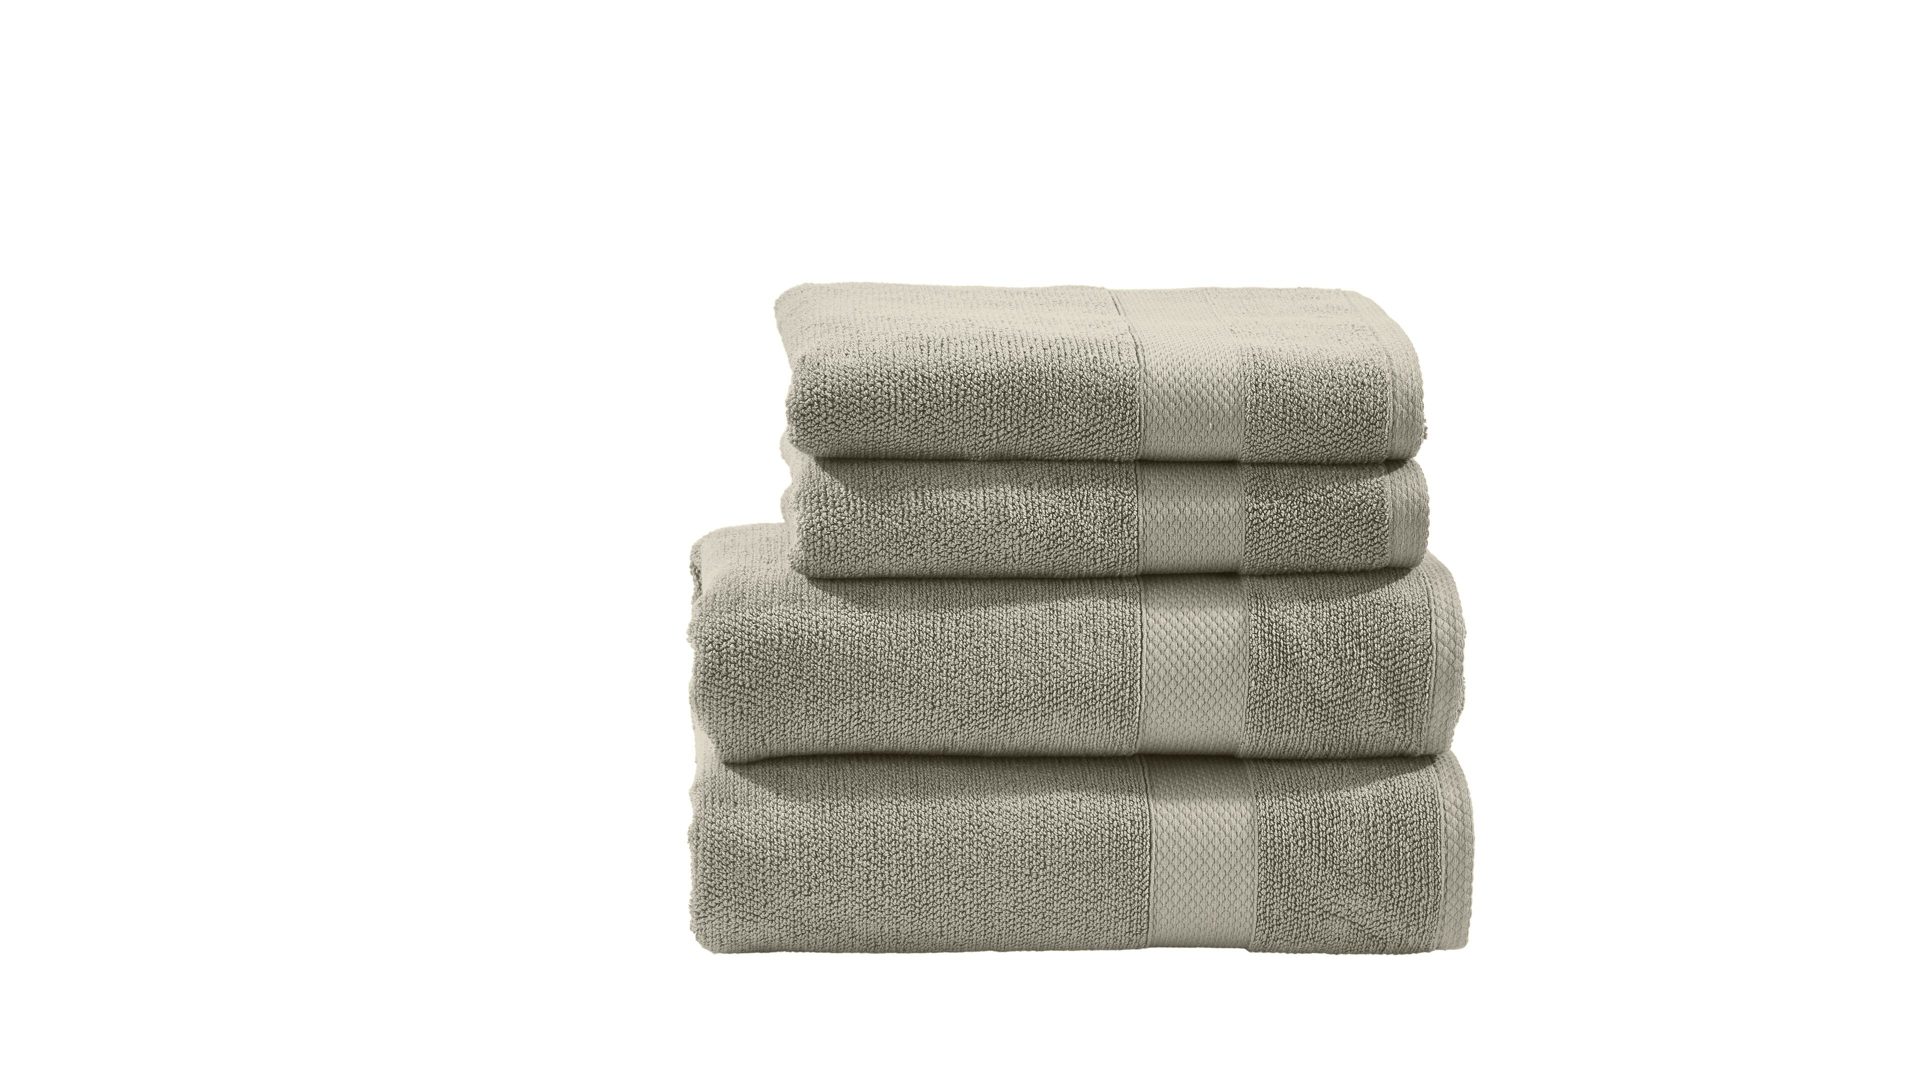 Handtuch-Set Done.® be different aus Stoff in Beige DONE.® Handtuch-Set Deluxe für Ihre Heimtextilien taupefarbene Baumwolle – vierteilig